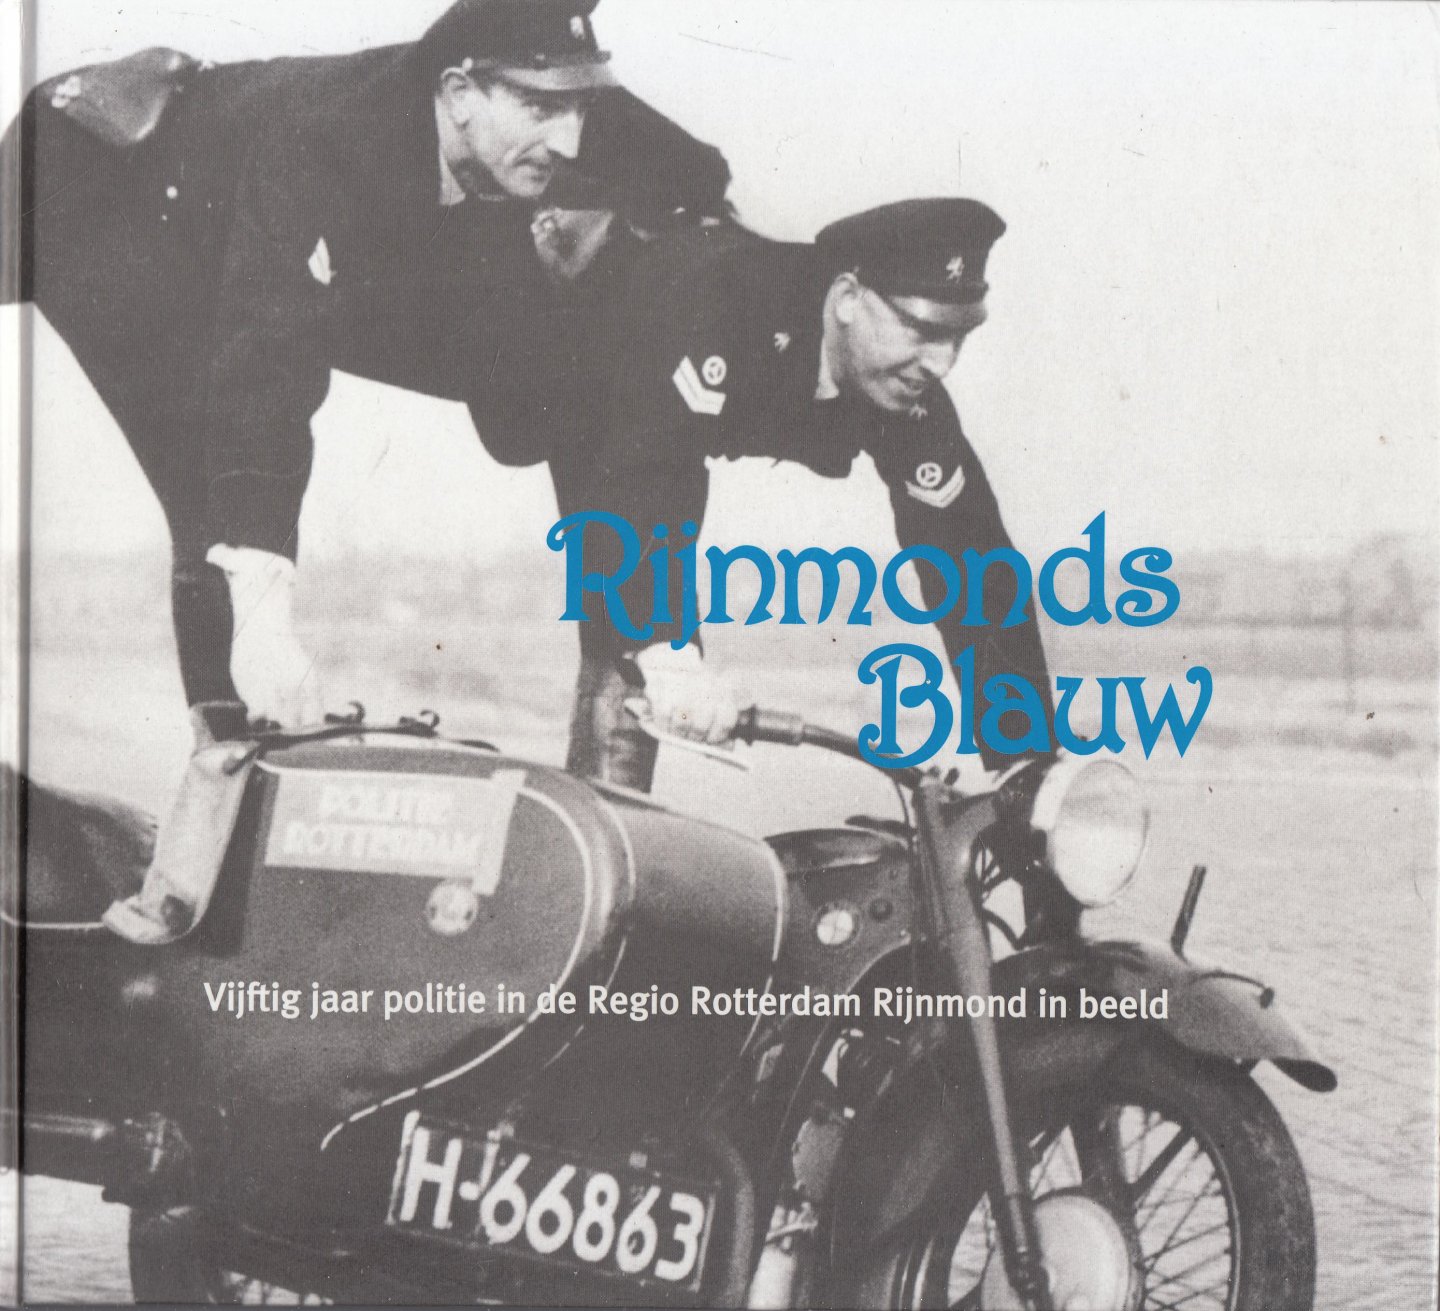 Hofs, Jan;  Geelof, Anne - Rijnmonds blauw : vijftig jaar politie in de regio Rotterdam Rijnmond in beeld